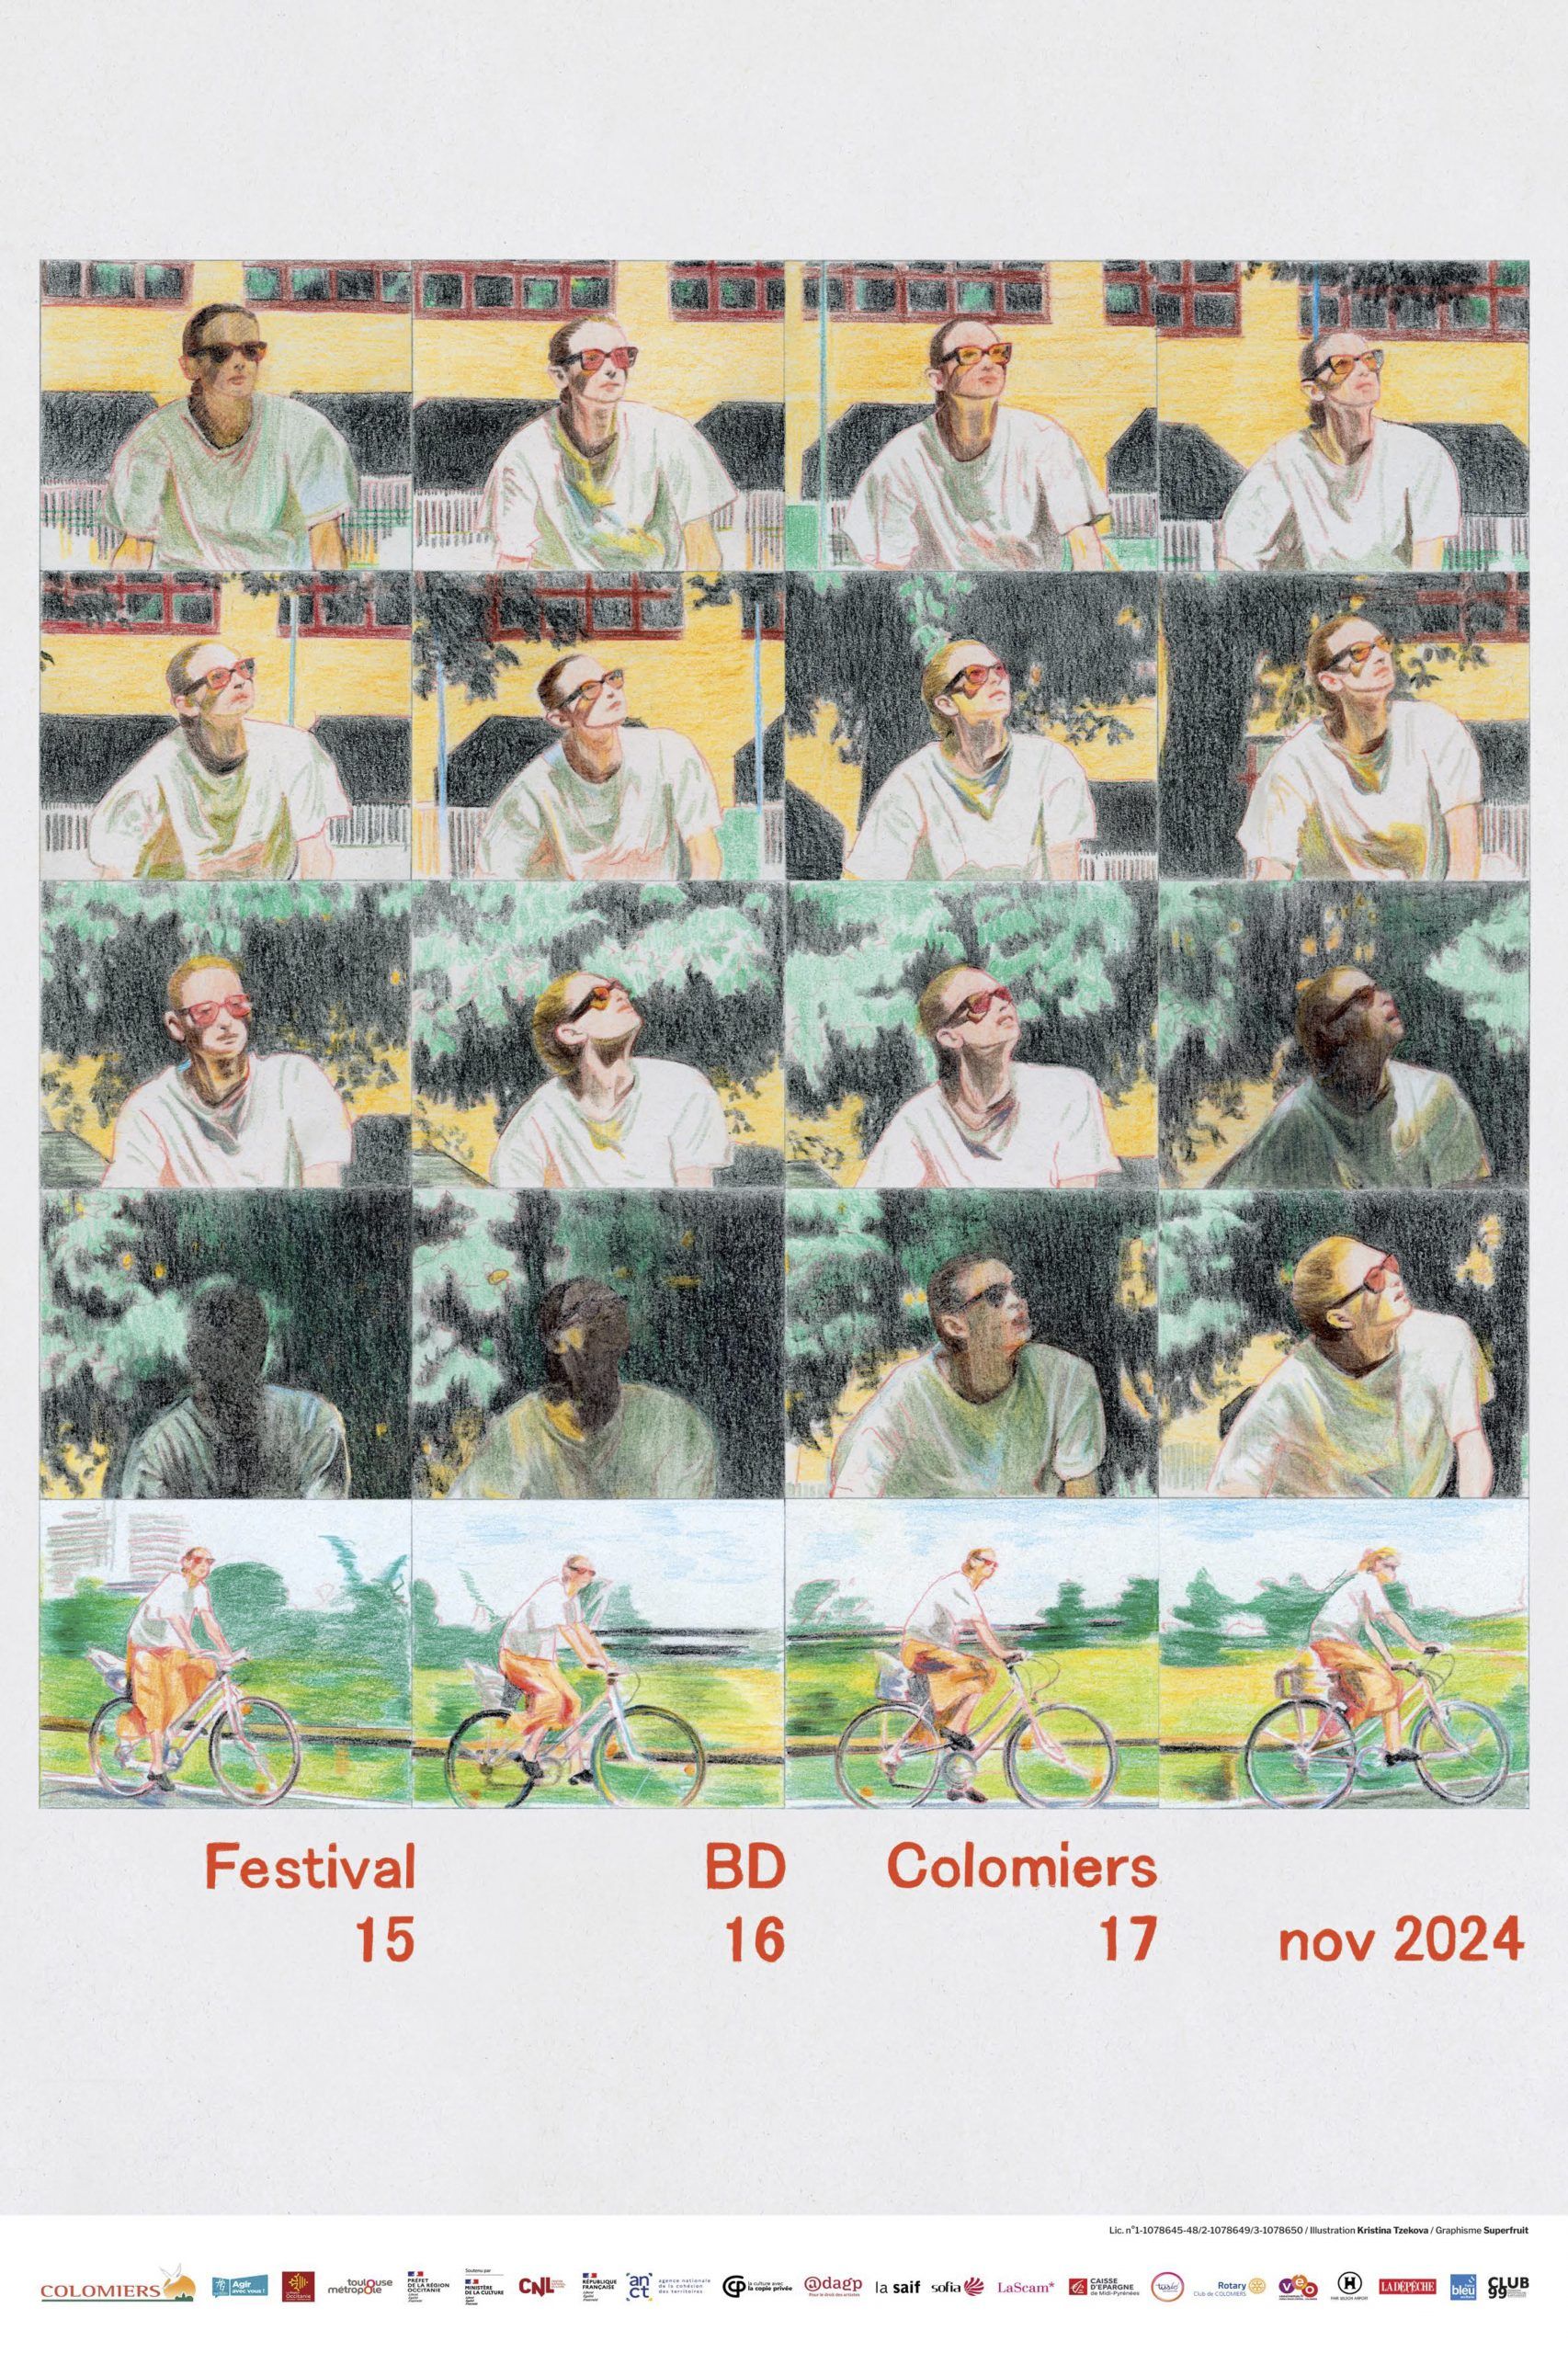 Festival BD Colomiers